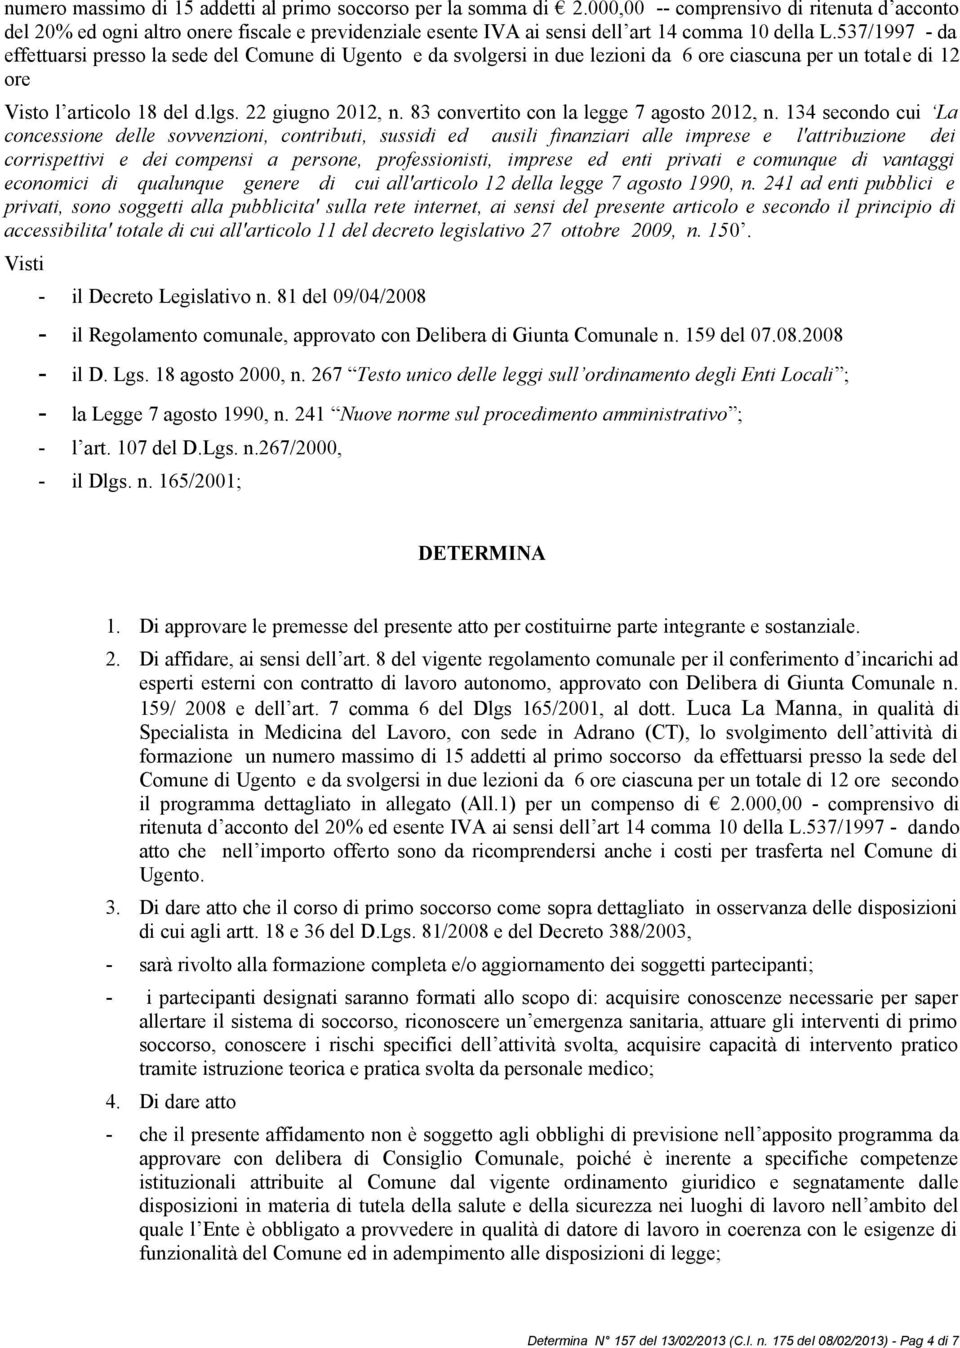 537/1997 - da effettuarsi presso la sede del Comune di Ugento e da svolgersi in due lezioni da 6 ore ciascuna per un totale di 12 ore Visto l articolo 18 del d.lgs. 22 giugno 2012, n.